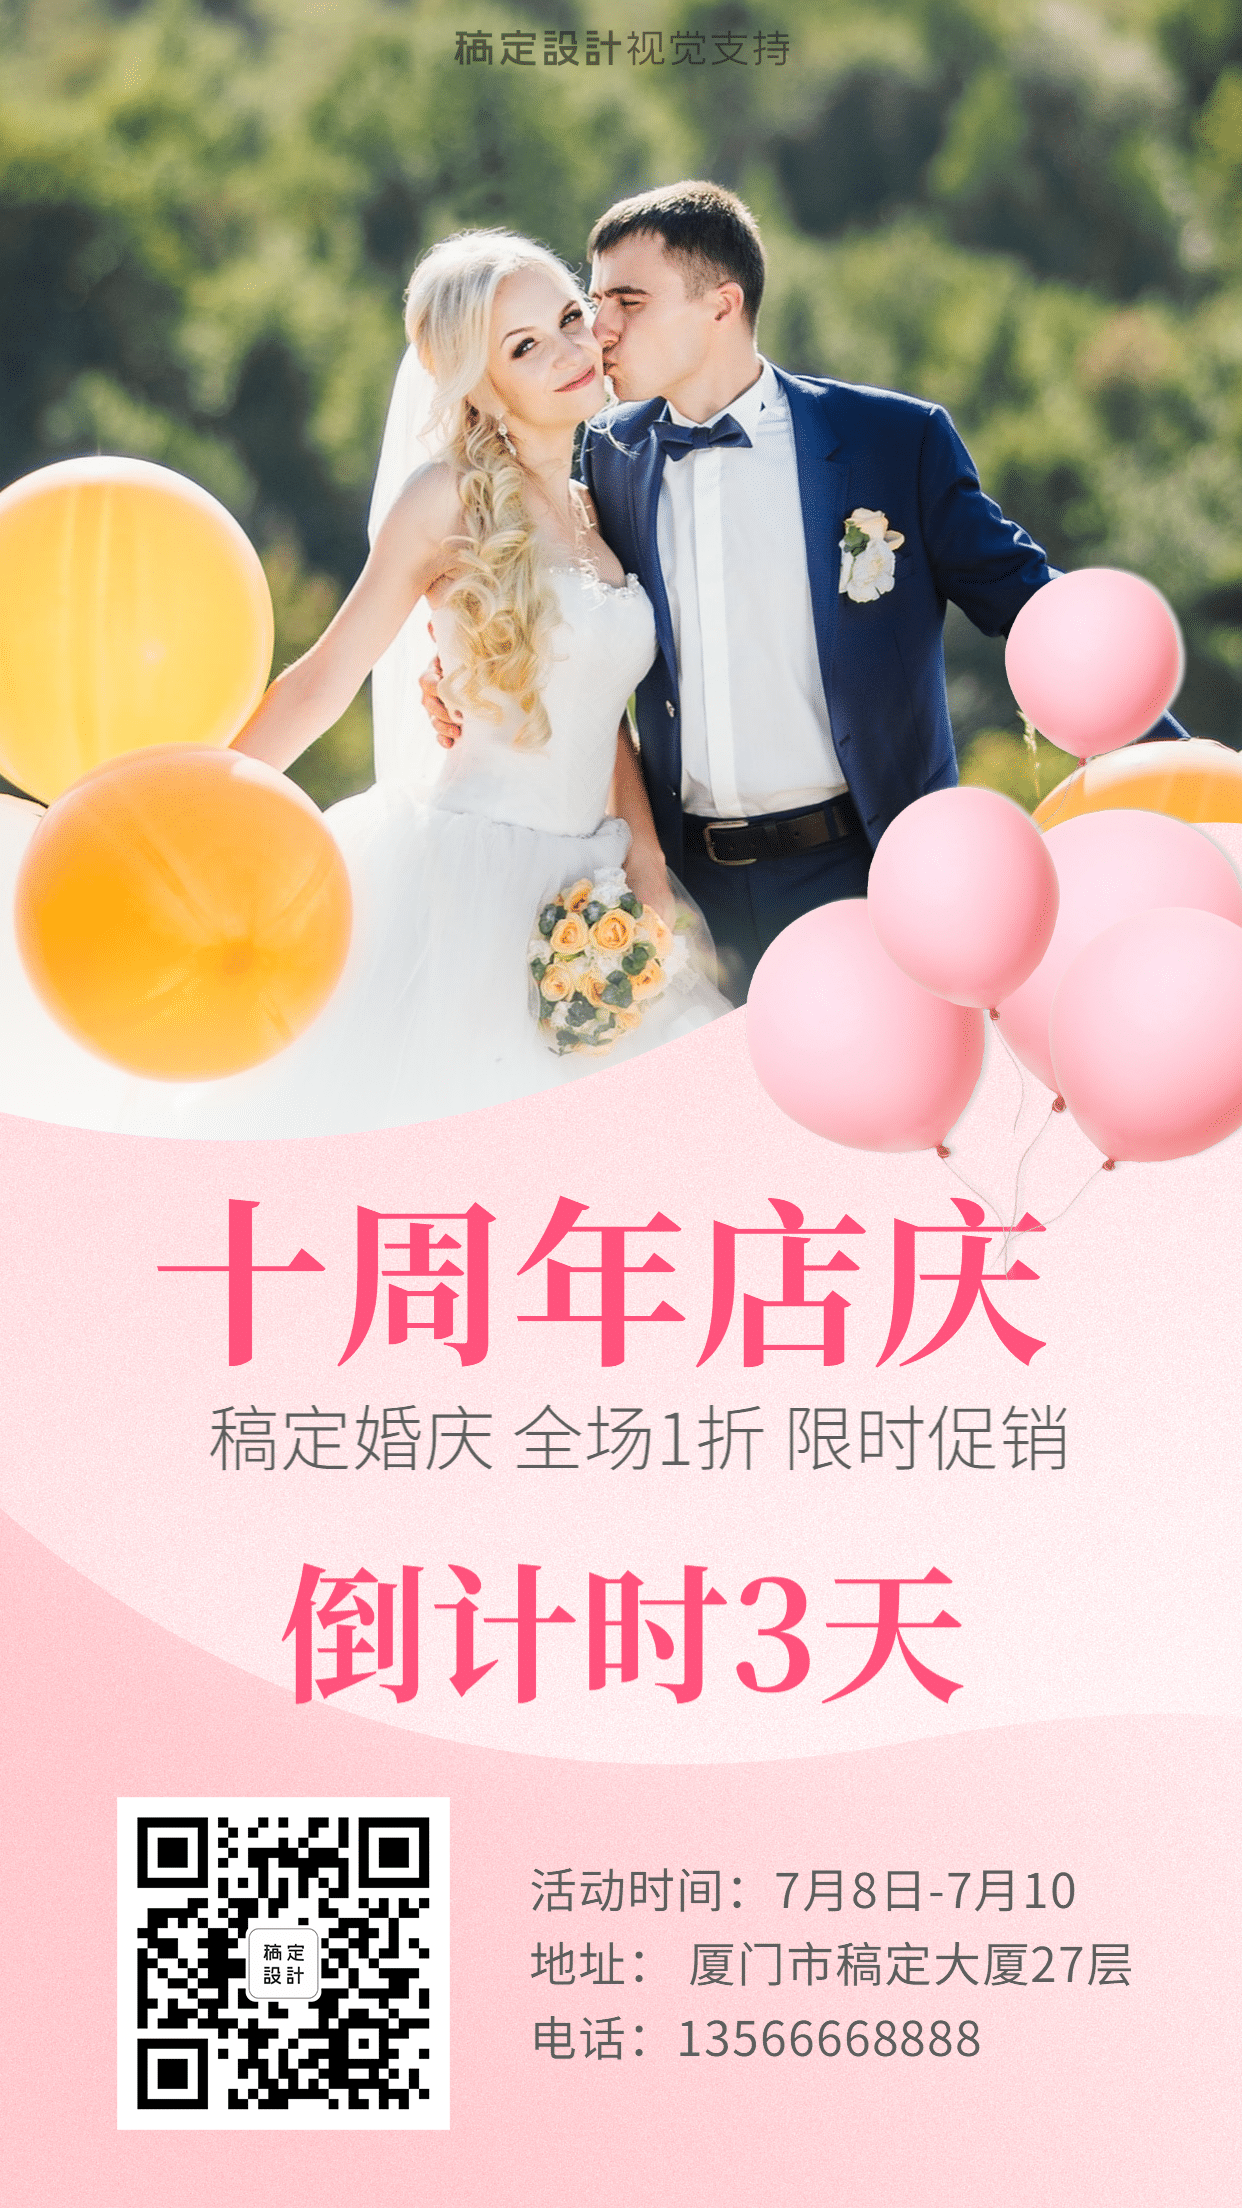 婚庆婚礼策划机构周年庆促销倒计时海报预览效果